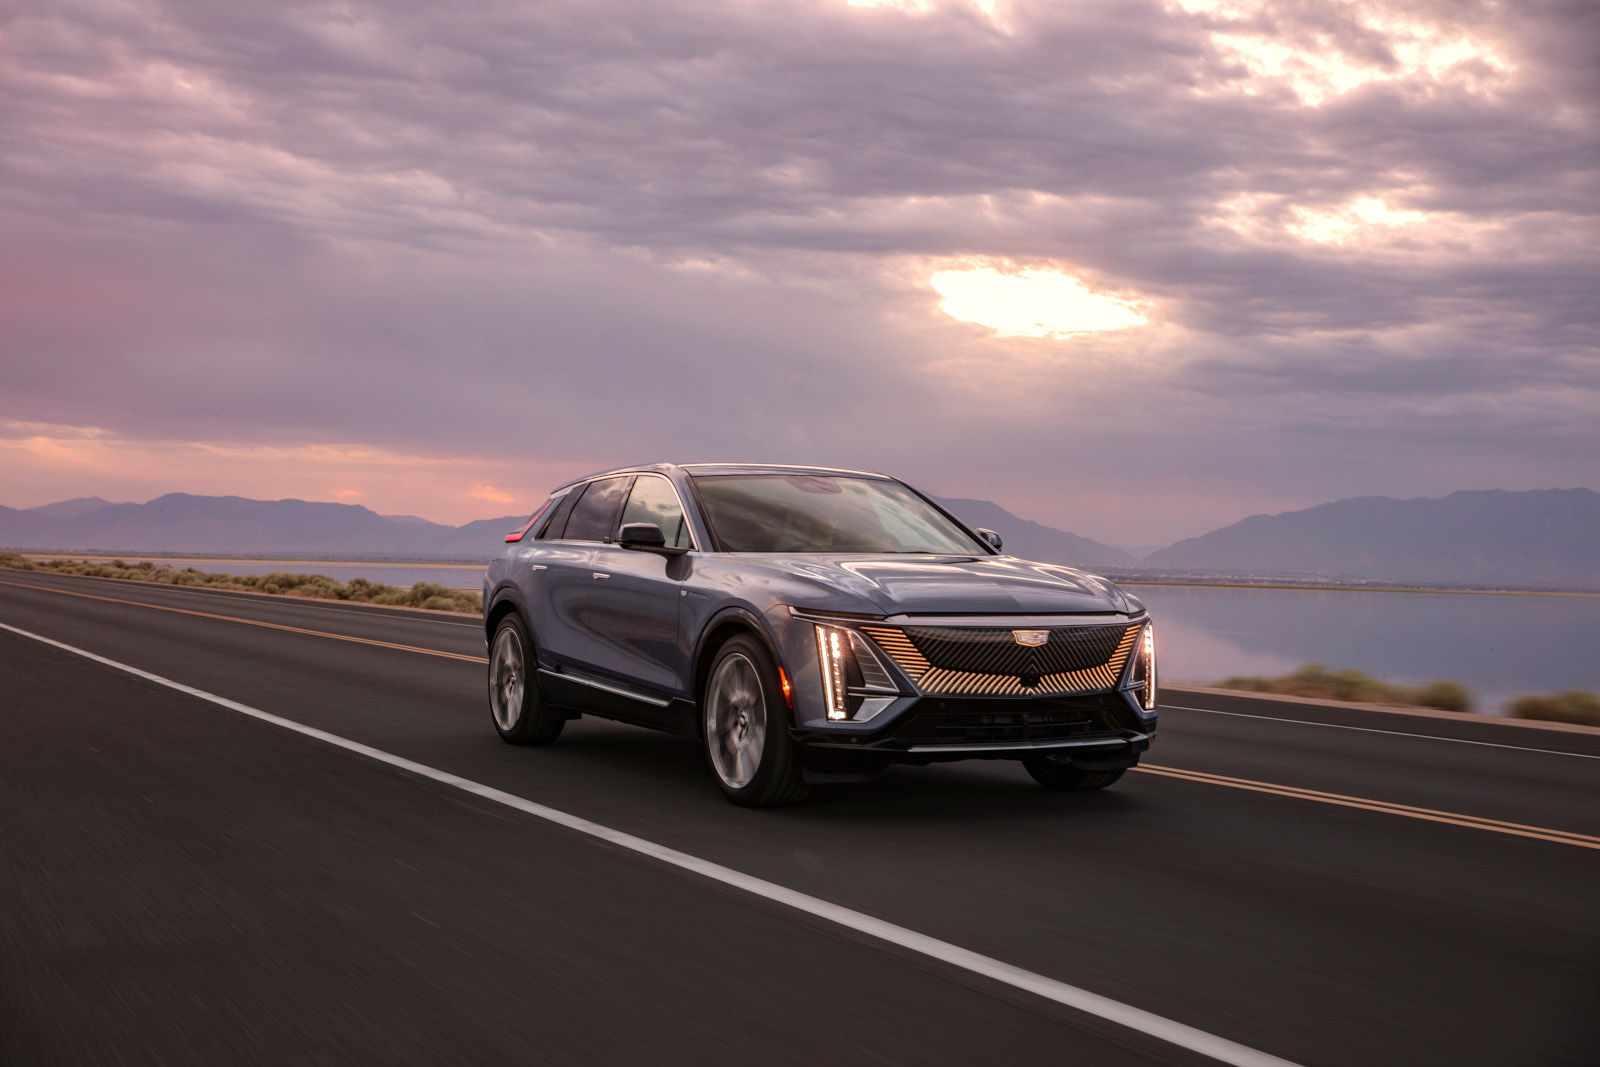 Le Cadillac Lyriq 2023 : le luxe électrique à l’américaine